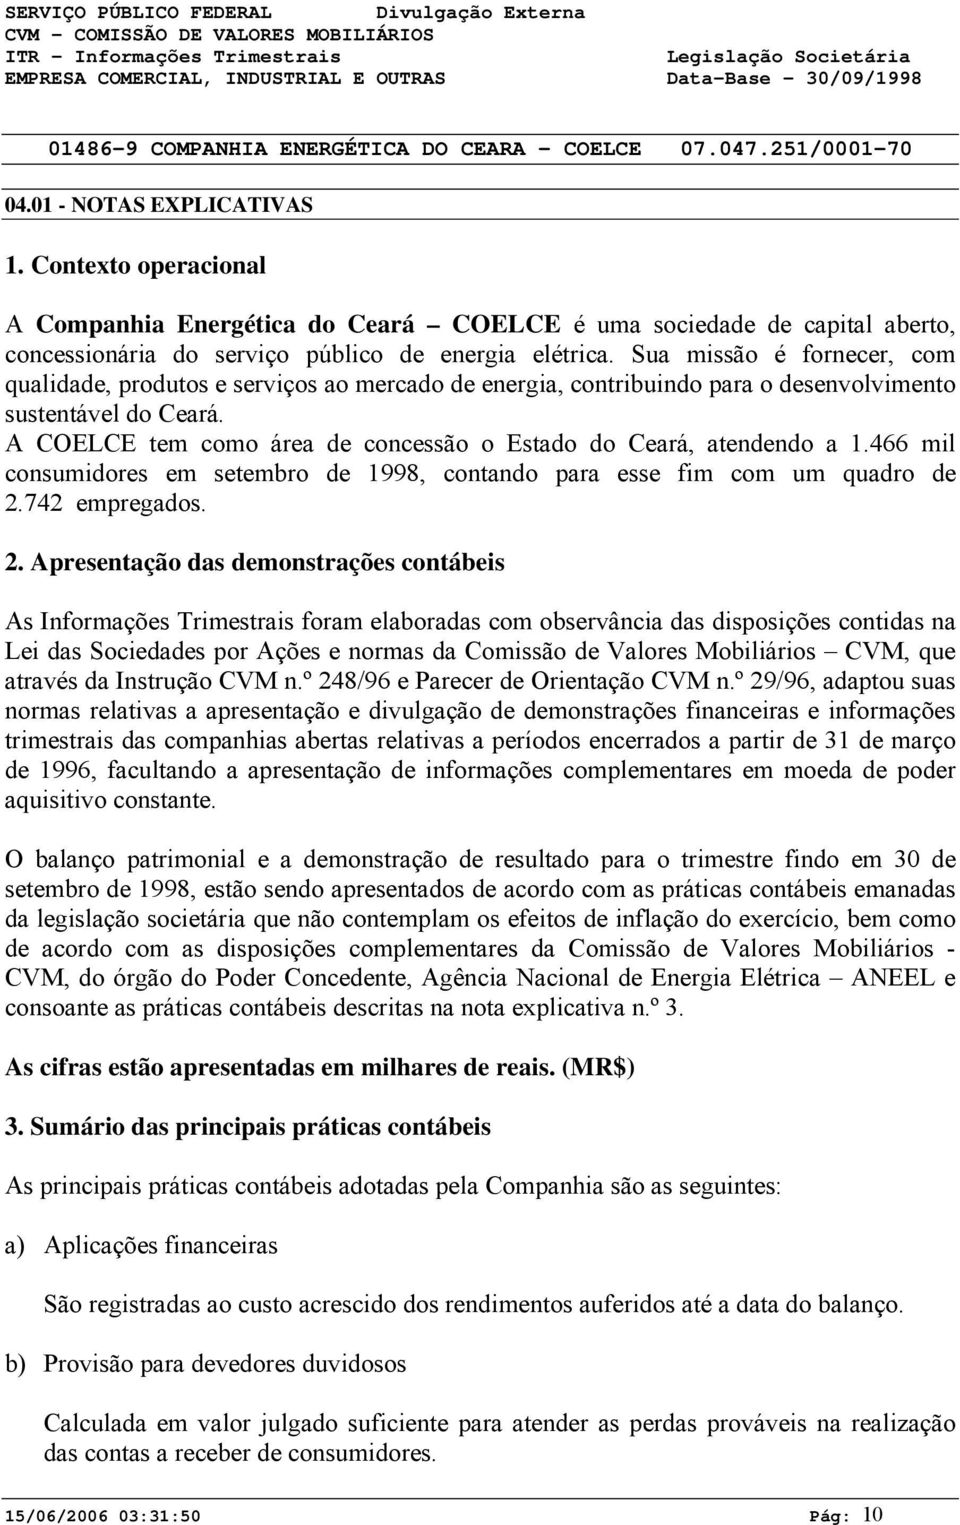 A COELCE tem como área de concessão o Estado do Ceará, atendendo a 1.466 mil consumidores em setembro de 1998, contando para esse fim com um quadro de 2.